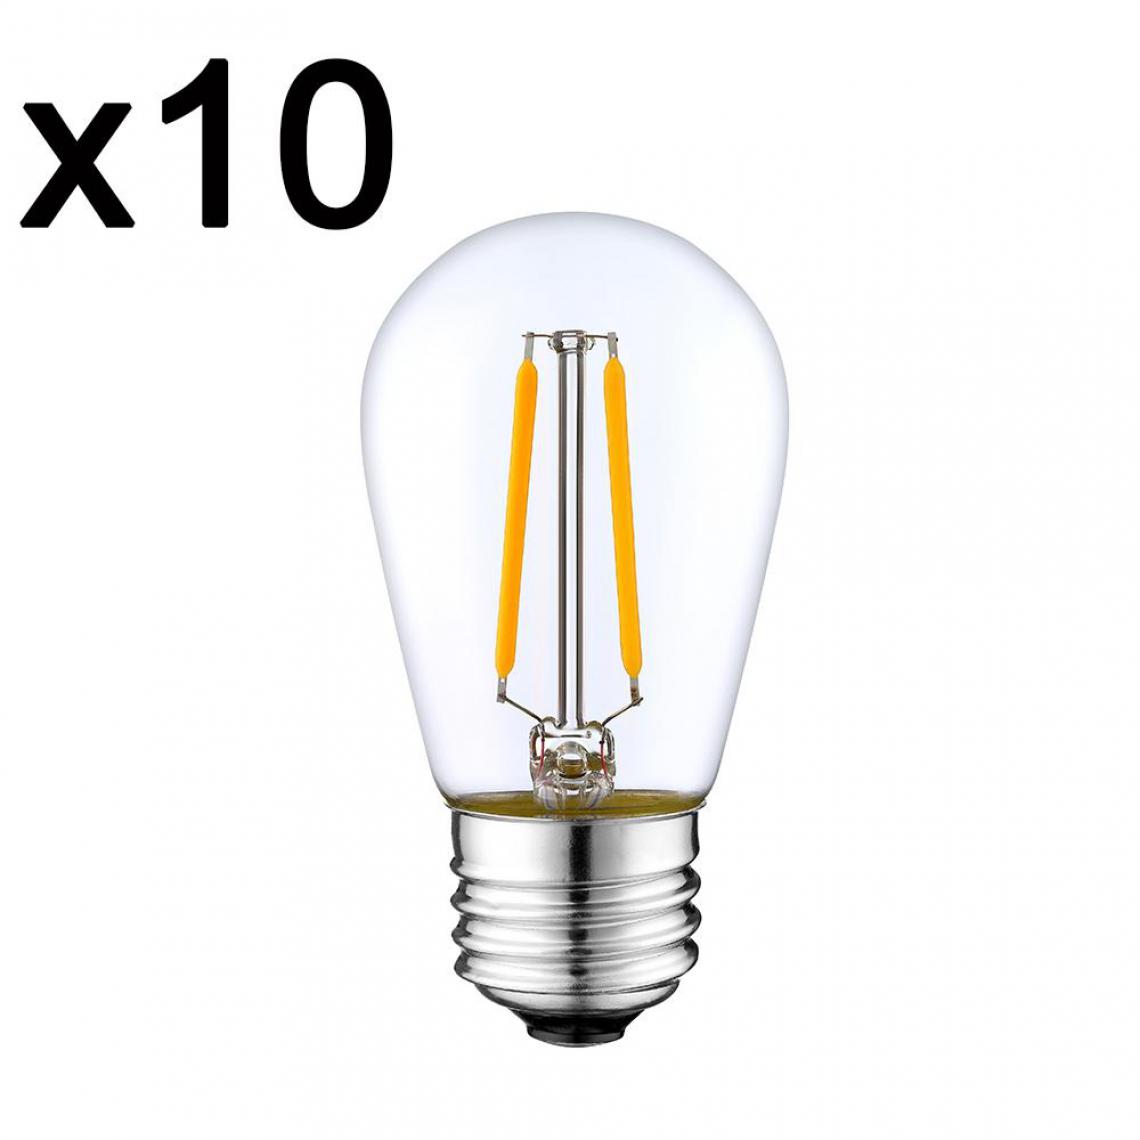 In The Loop - Lot de 10 ampoules filaments LED XENA Transparent Verre E27 2W - Ampoules LED